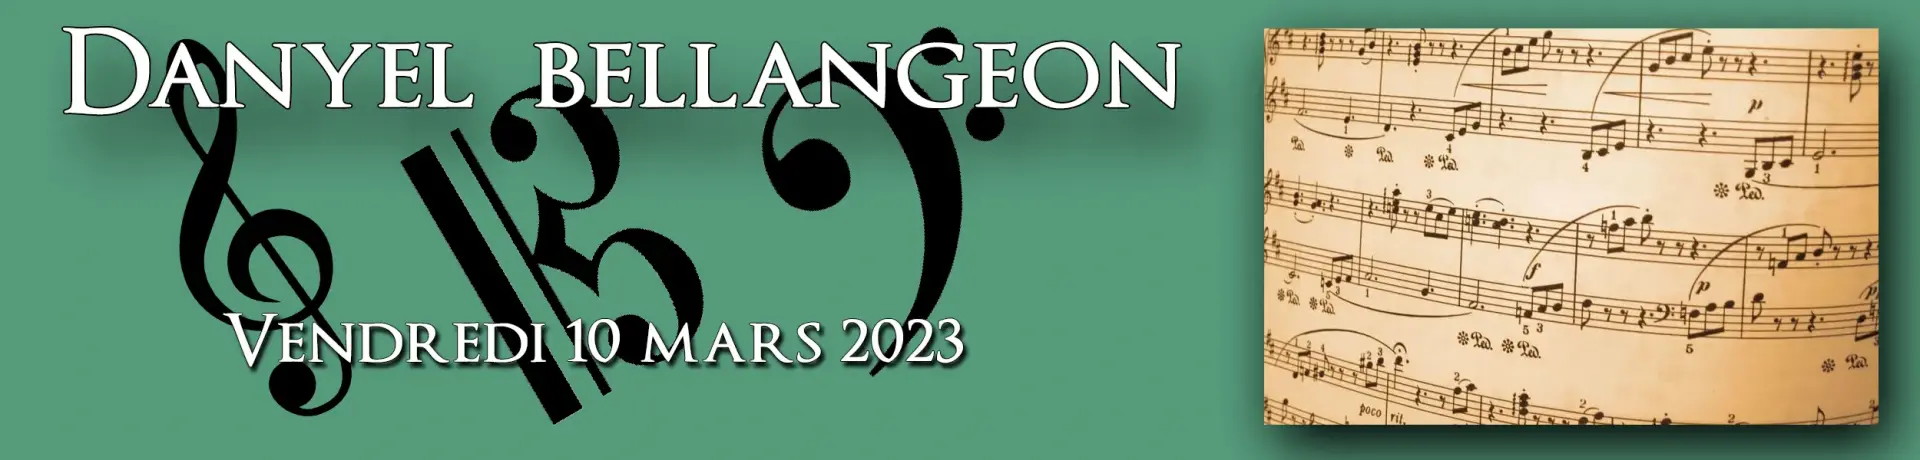 Titre album danyel bellangeon 2023